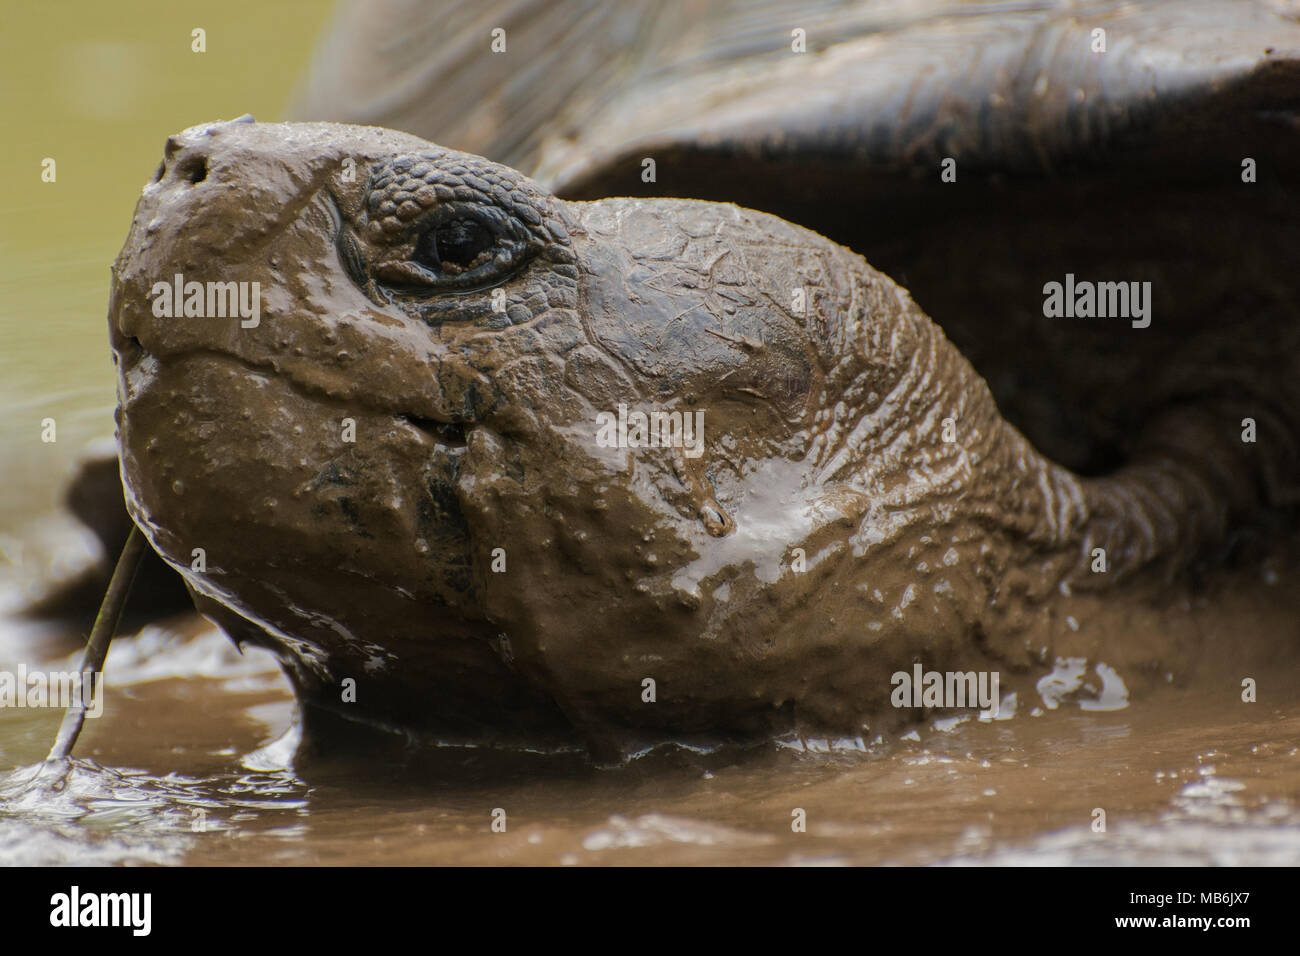 Una tortuga gigante de Galápagos (Chelonoidis nigra) tomando un baño de barro para escapar del calor. Estos sólo se encuentran en las islas Galápagos. Foto de stock